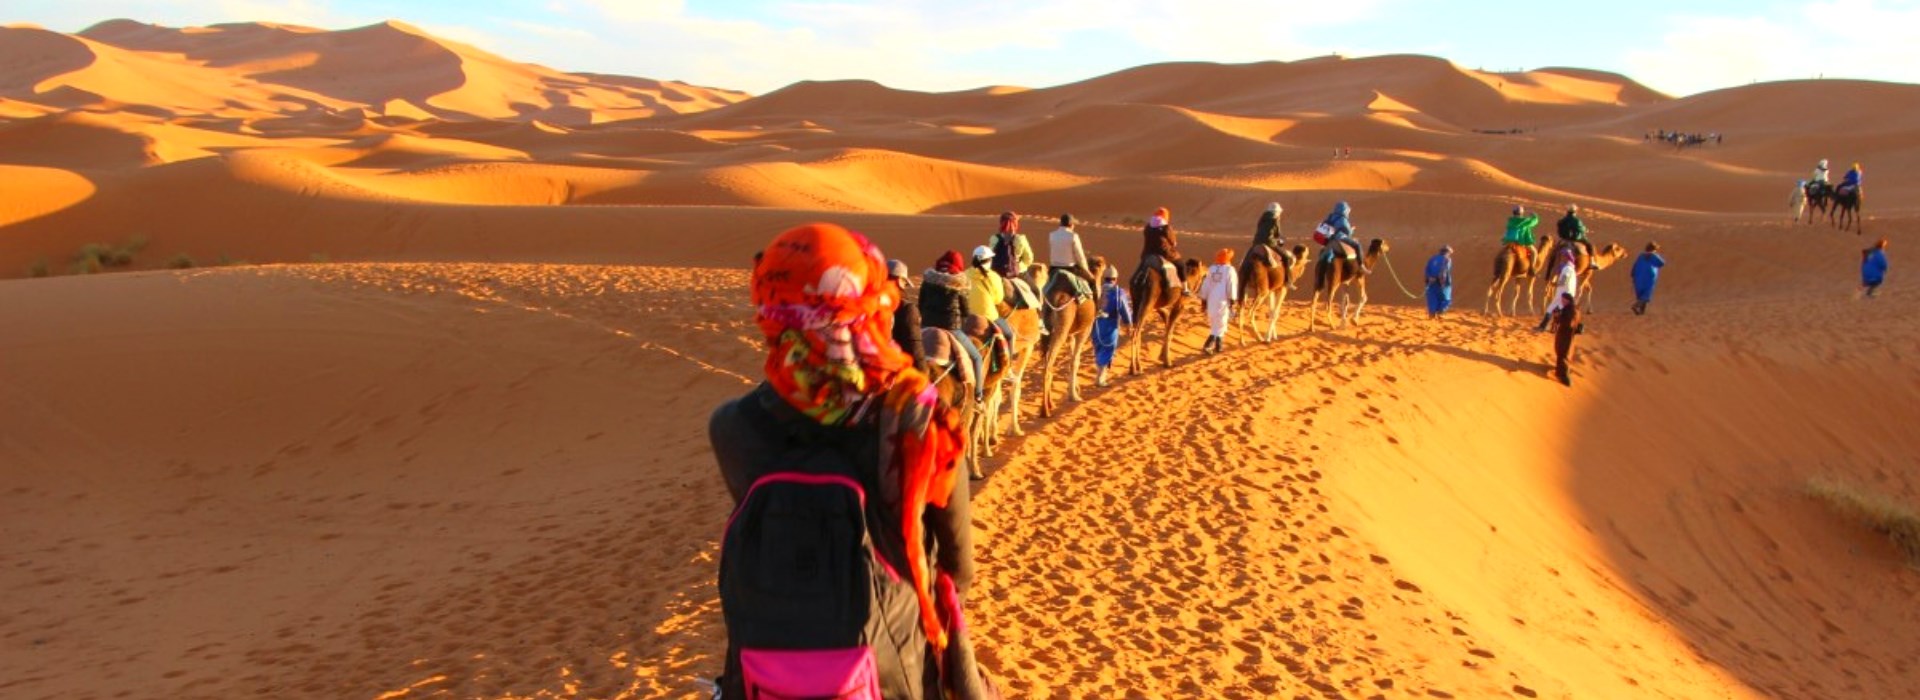 Visiter Les dunes de Tidri - Maroc